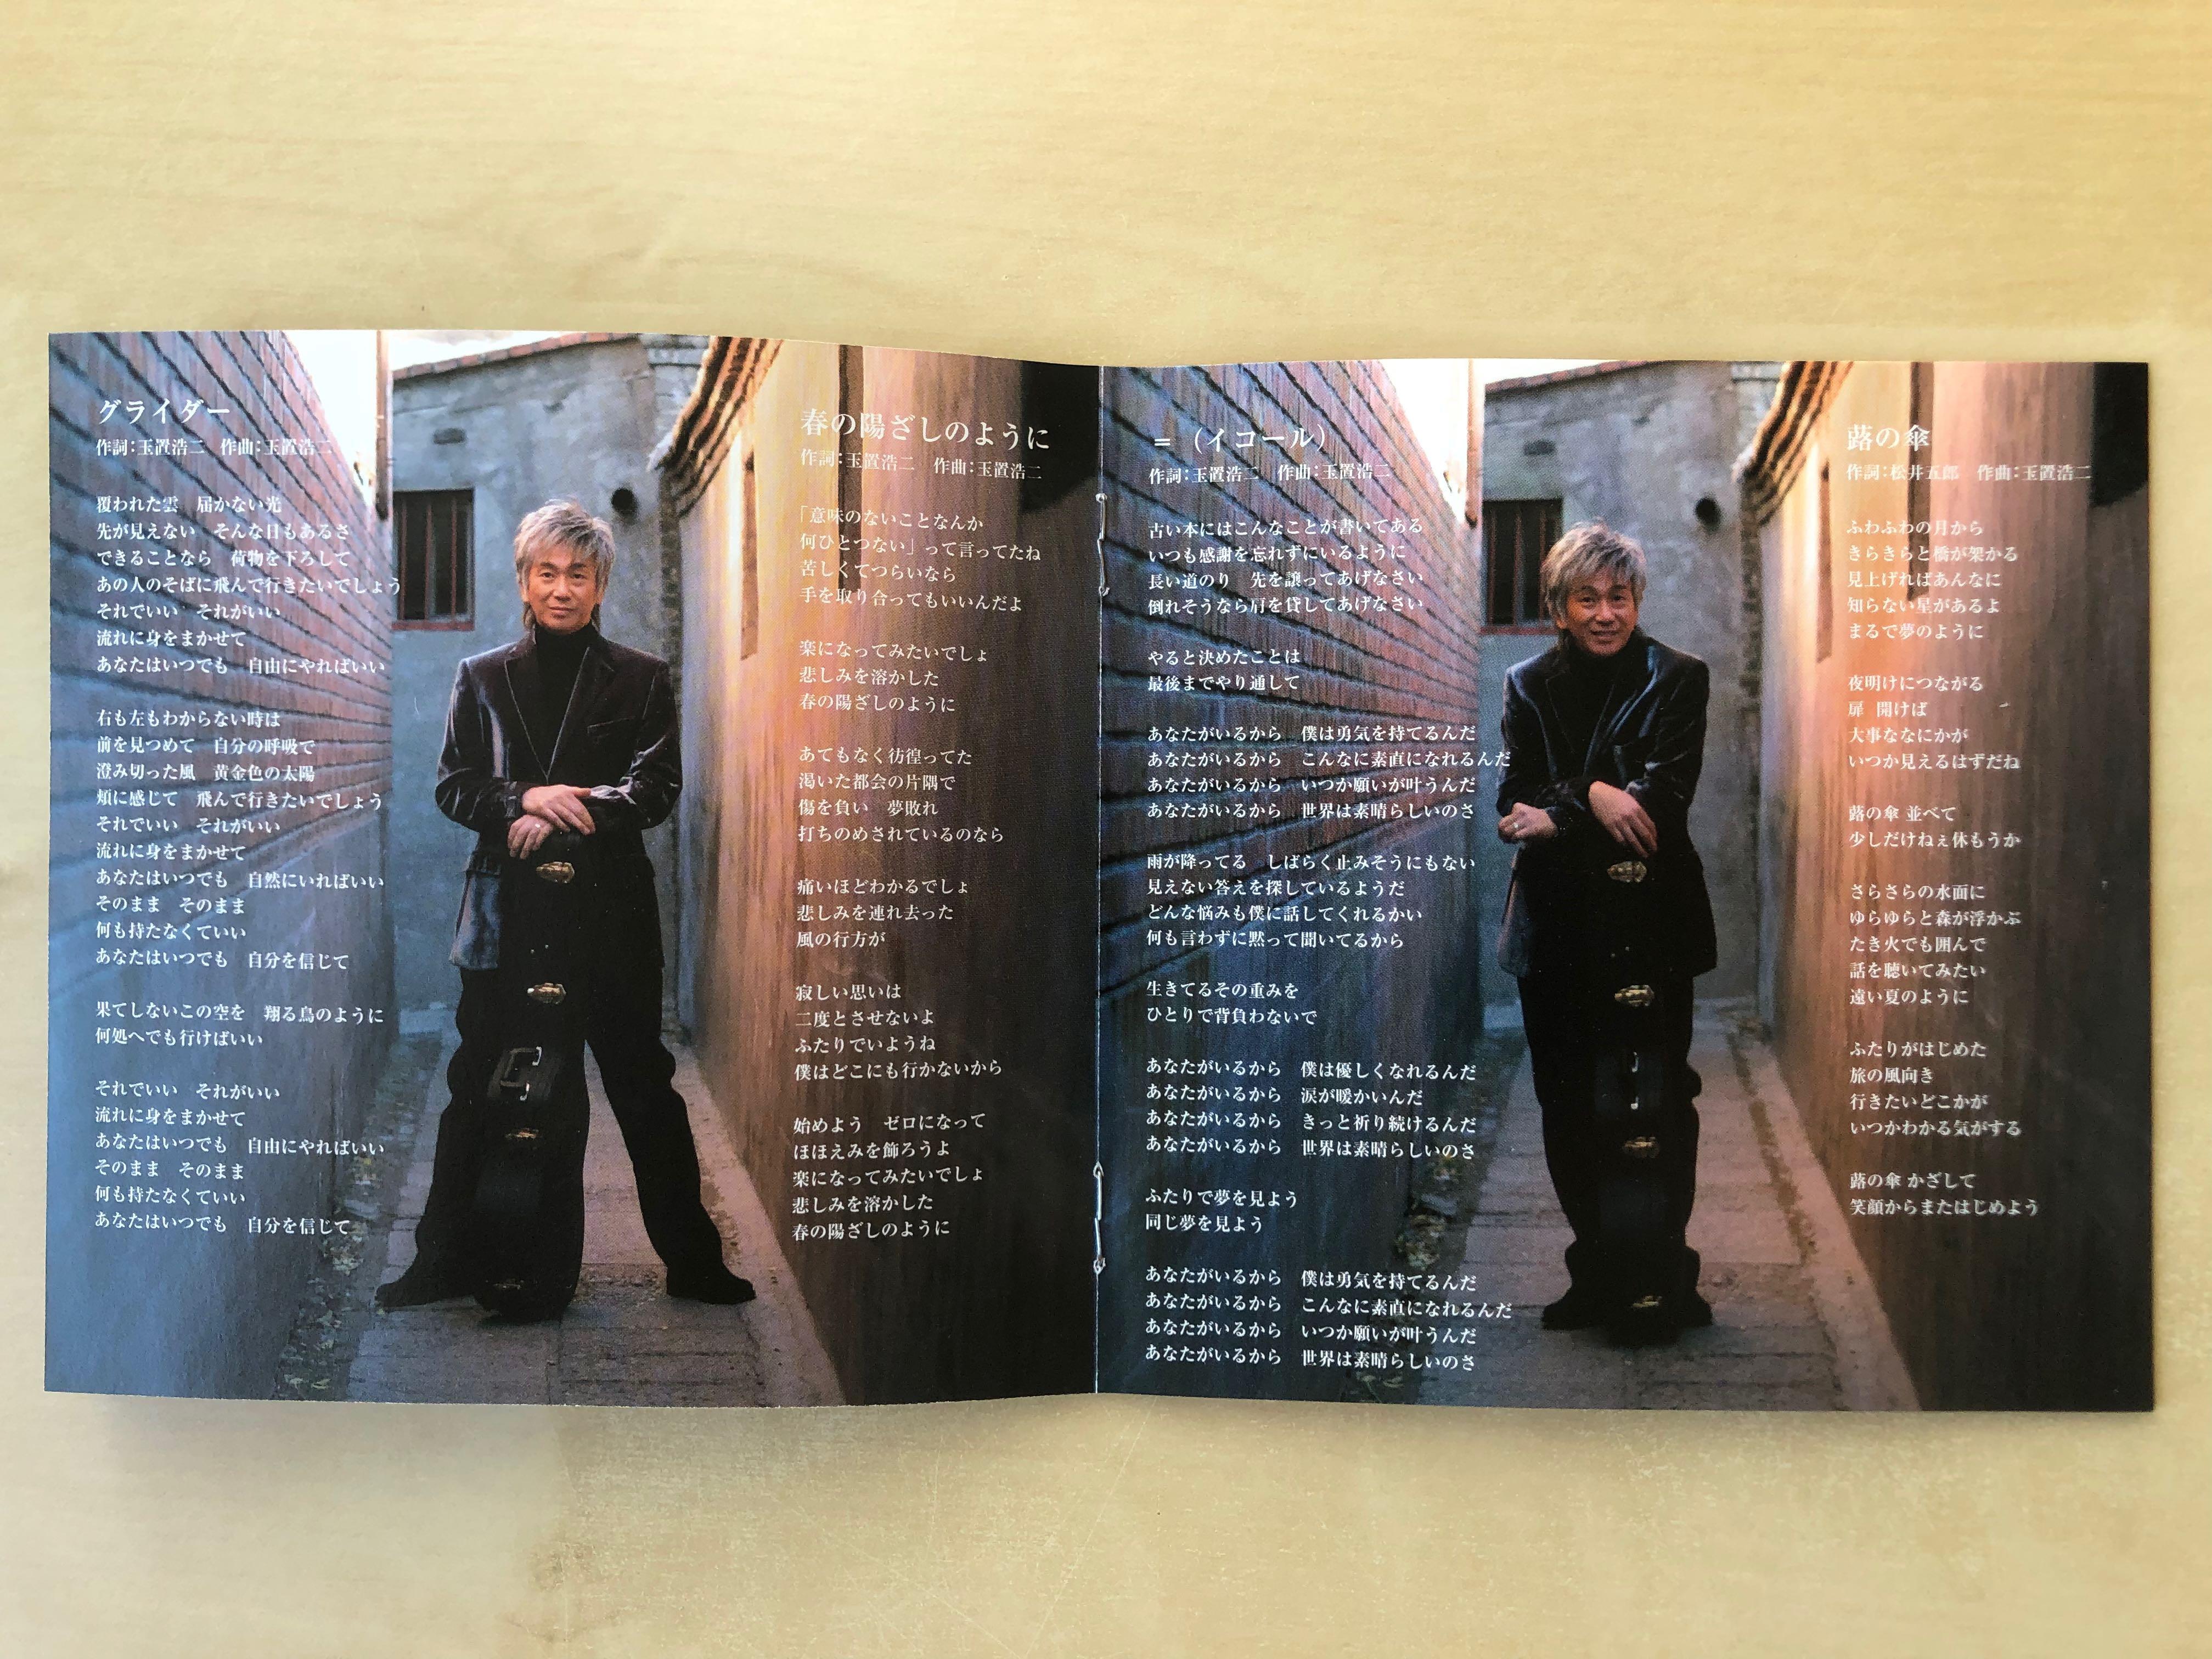 CD丨玉置浩二今日というこの日を生きていこう(DVD付き限定盤)(日本版